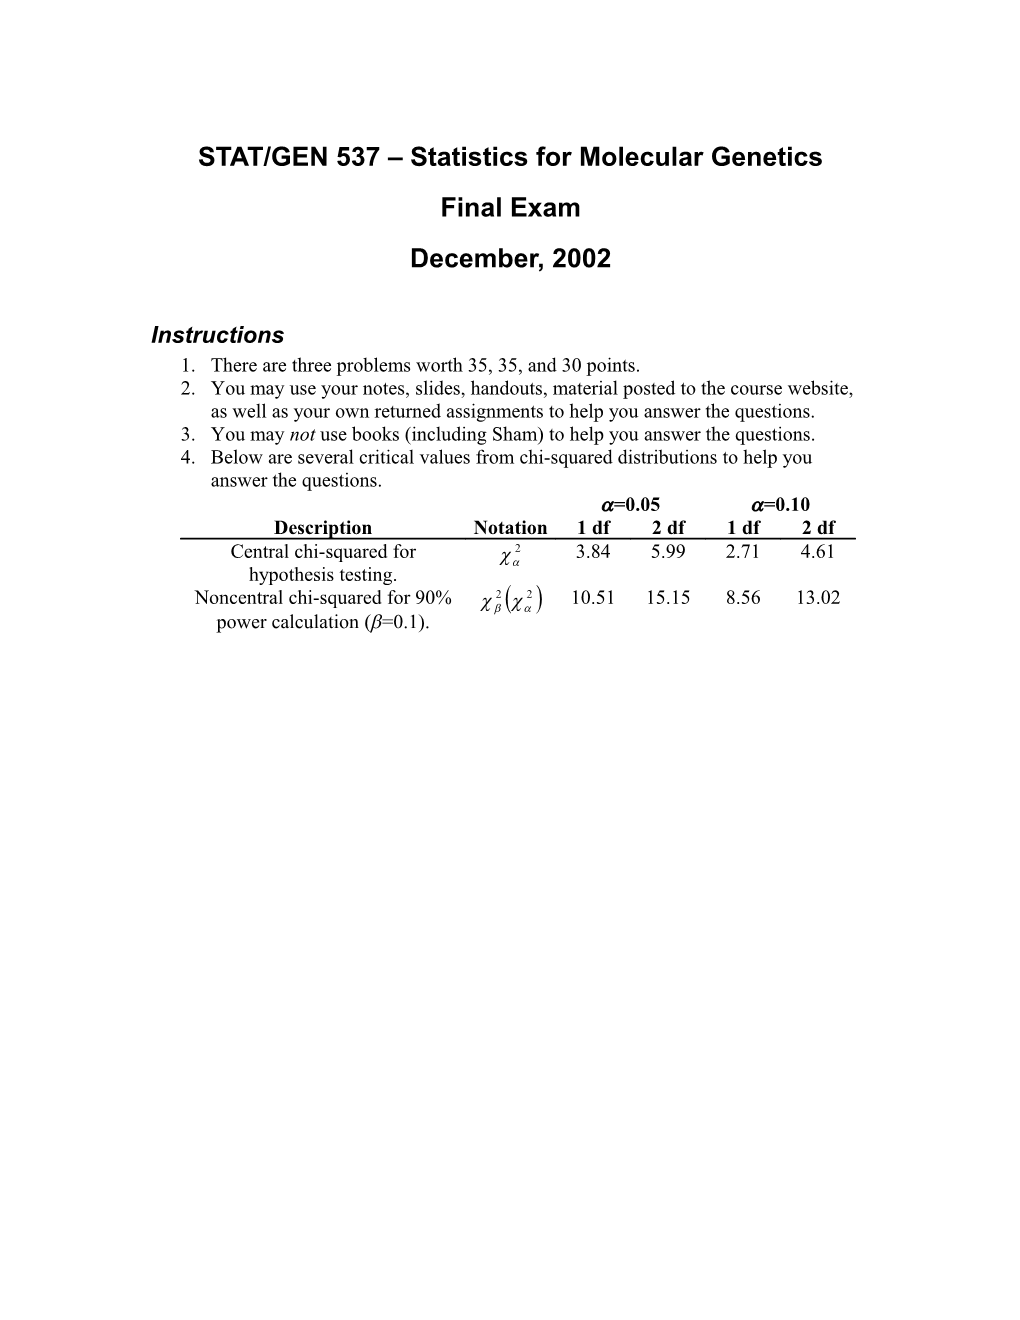 STAT/GEN 537 Statistics for Molecular Genetics